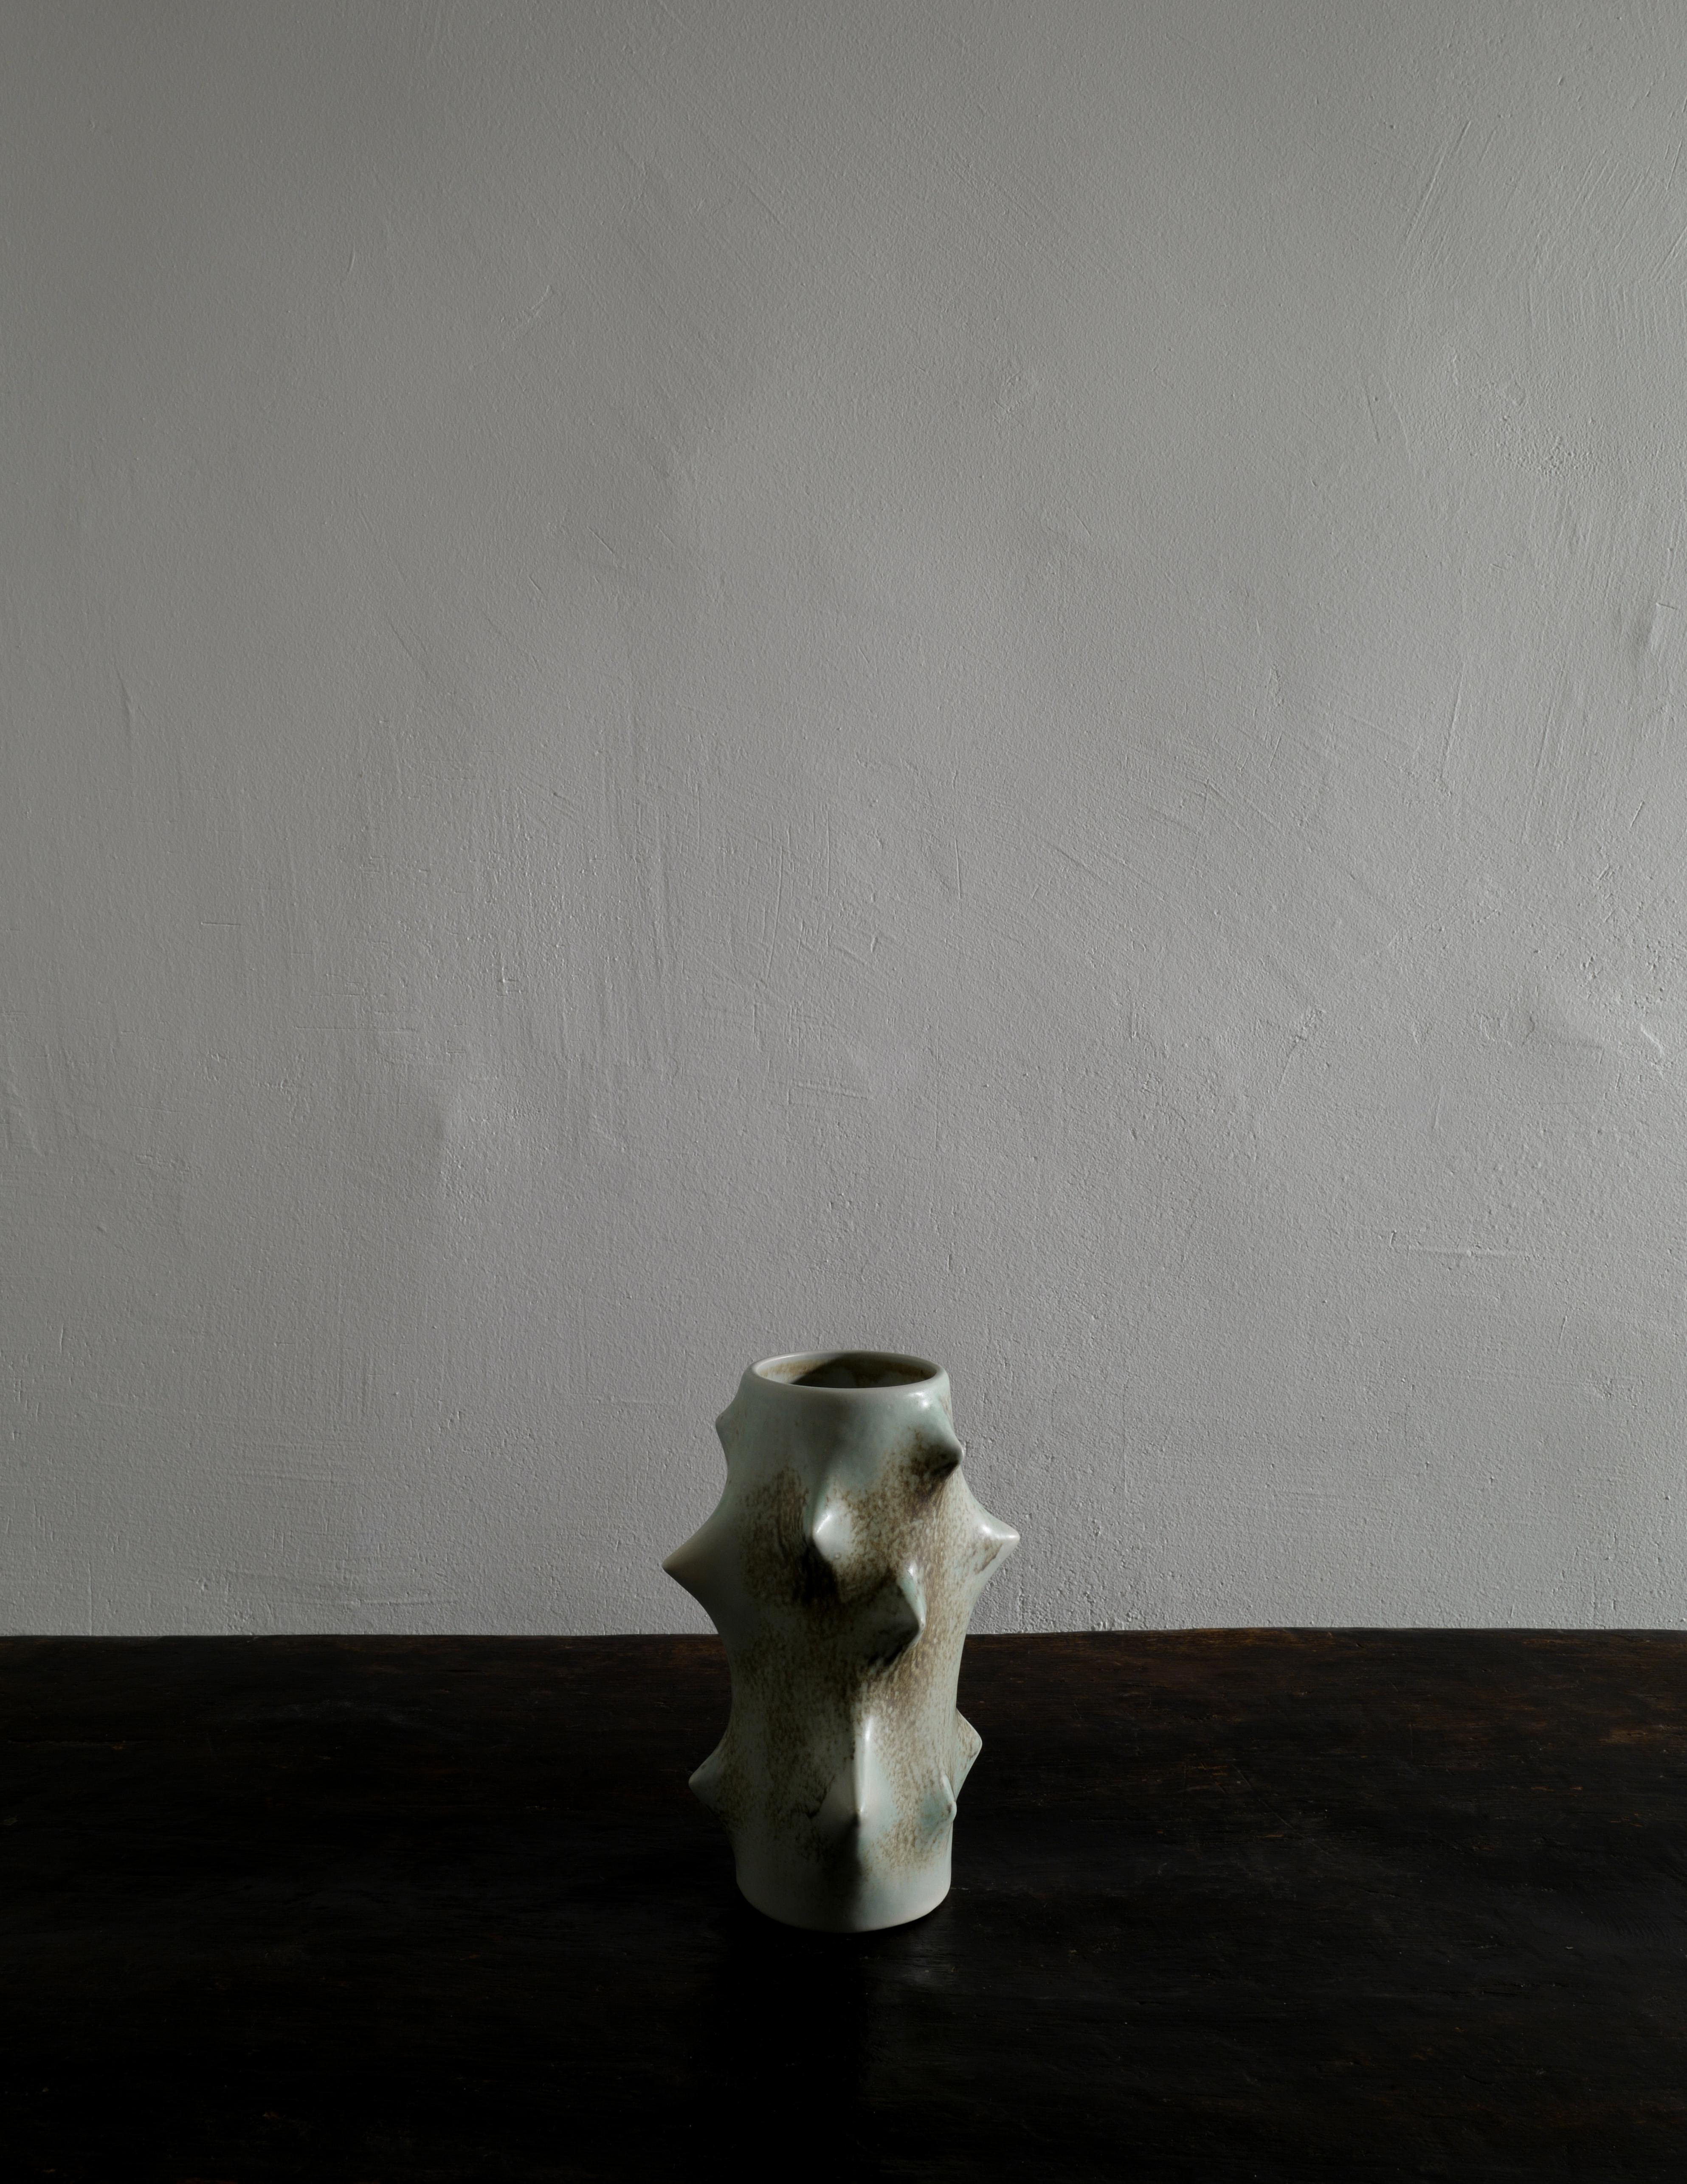 Seltene Dornenvase in Hellgrün, entworfen von Knud Basse und hergestellt von Michael Andersen, Dänemark. In gutem Vintage-Zustand mit kleinen Gebrauchsspuren und signiert / markiert an der Unterseite. Wir haben auch ein Paar dunklerer grüner Vasen